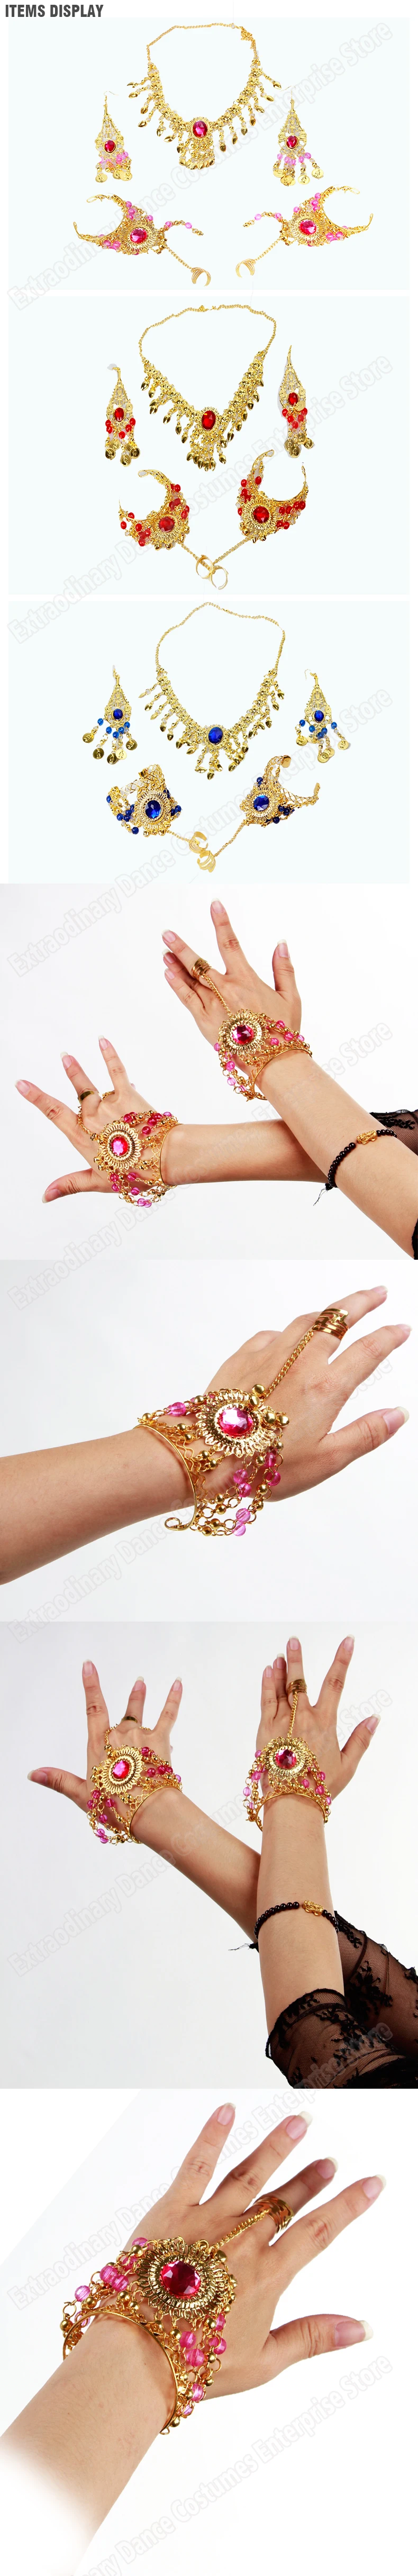 Для женщин индийские украшения аксессуары танец живота Болливуд Цепочки и ожерелья Серьги Браслет Золото Одежда для танцев костюм